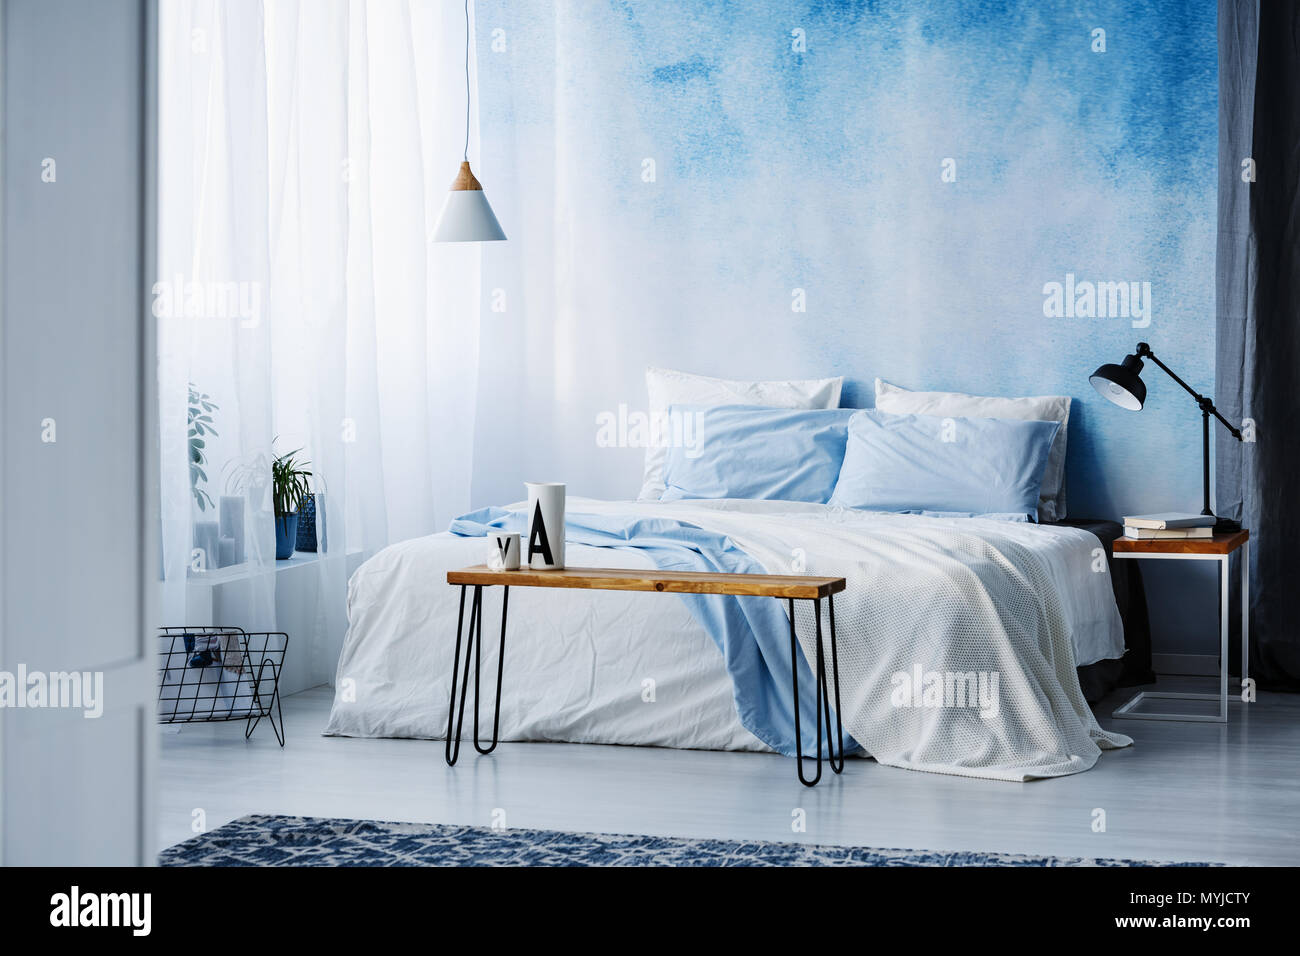 Auf hölzernen Tisch Lampe neben einem blauen und weißen Bett im Schlafzimmer Innenraum mit ombre Wand Stockfoto